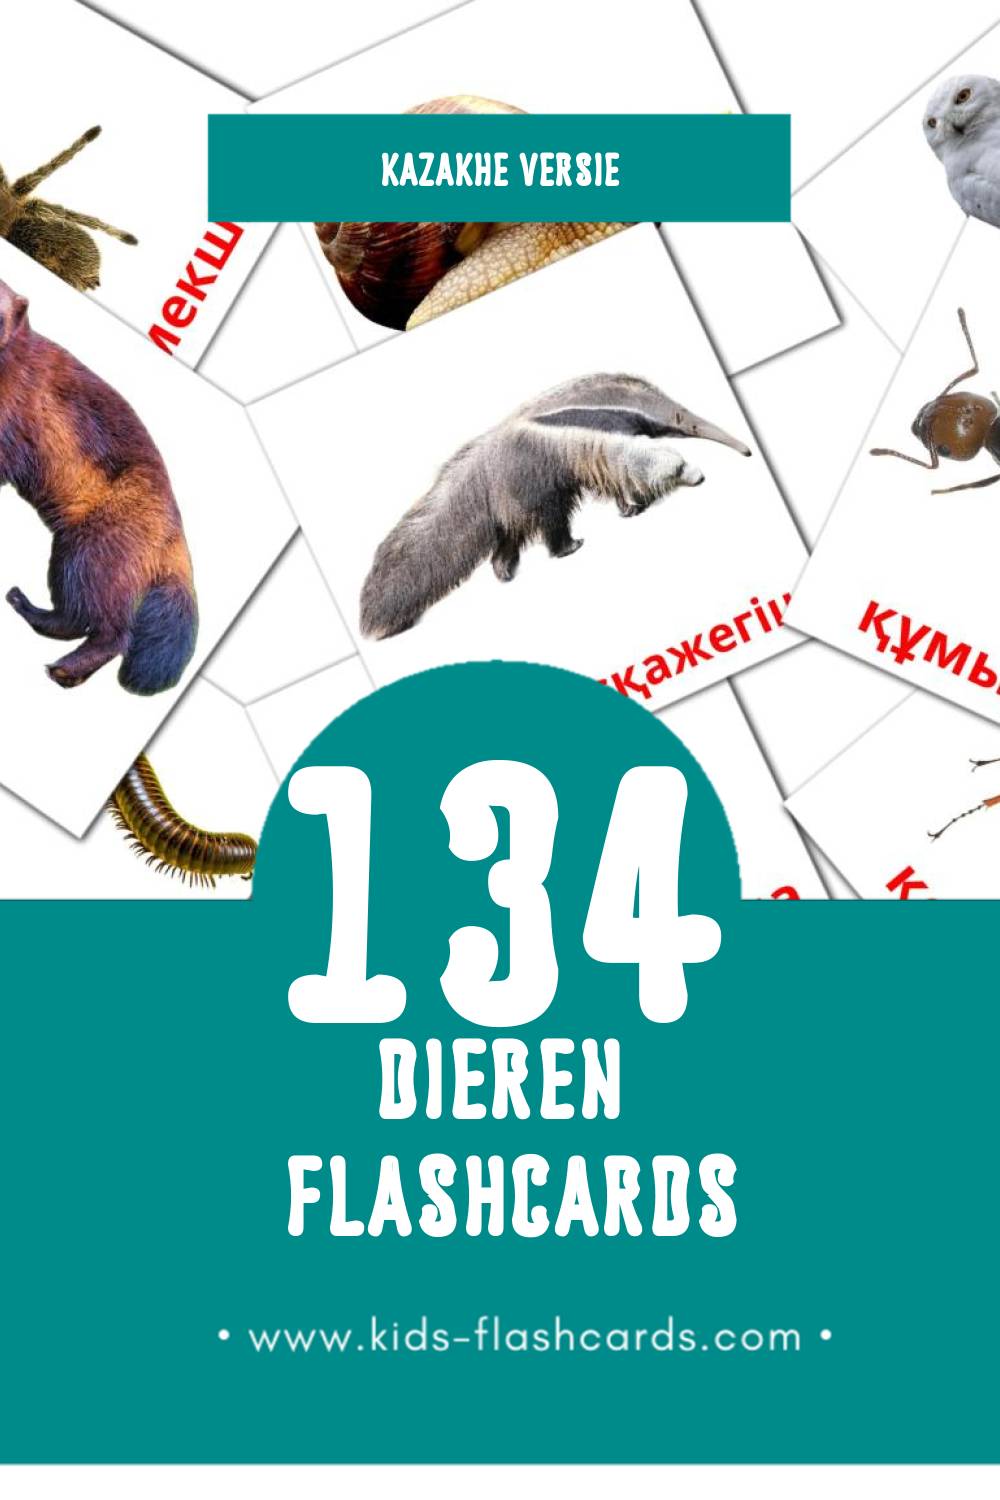 Visuele Жануарлар Flashcards voor Kleuters (134 kaarten in het Kazakh)